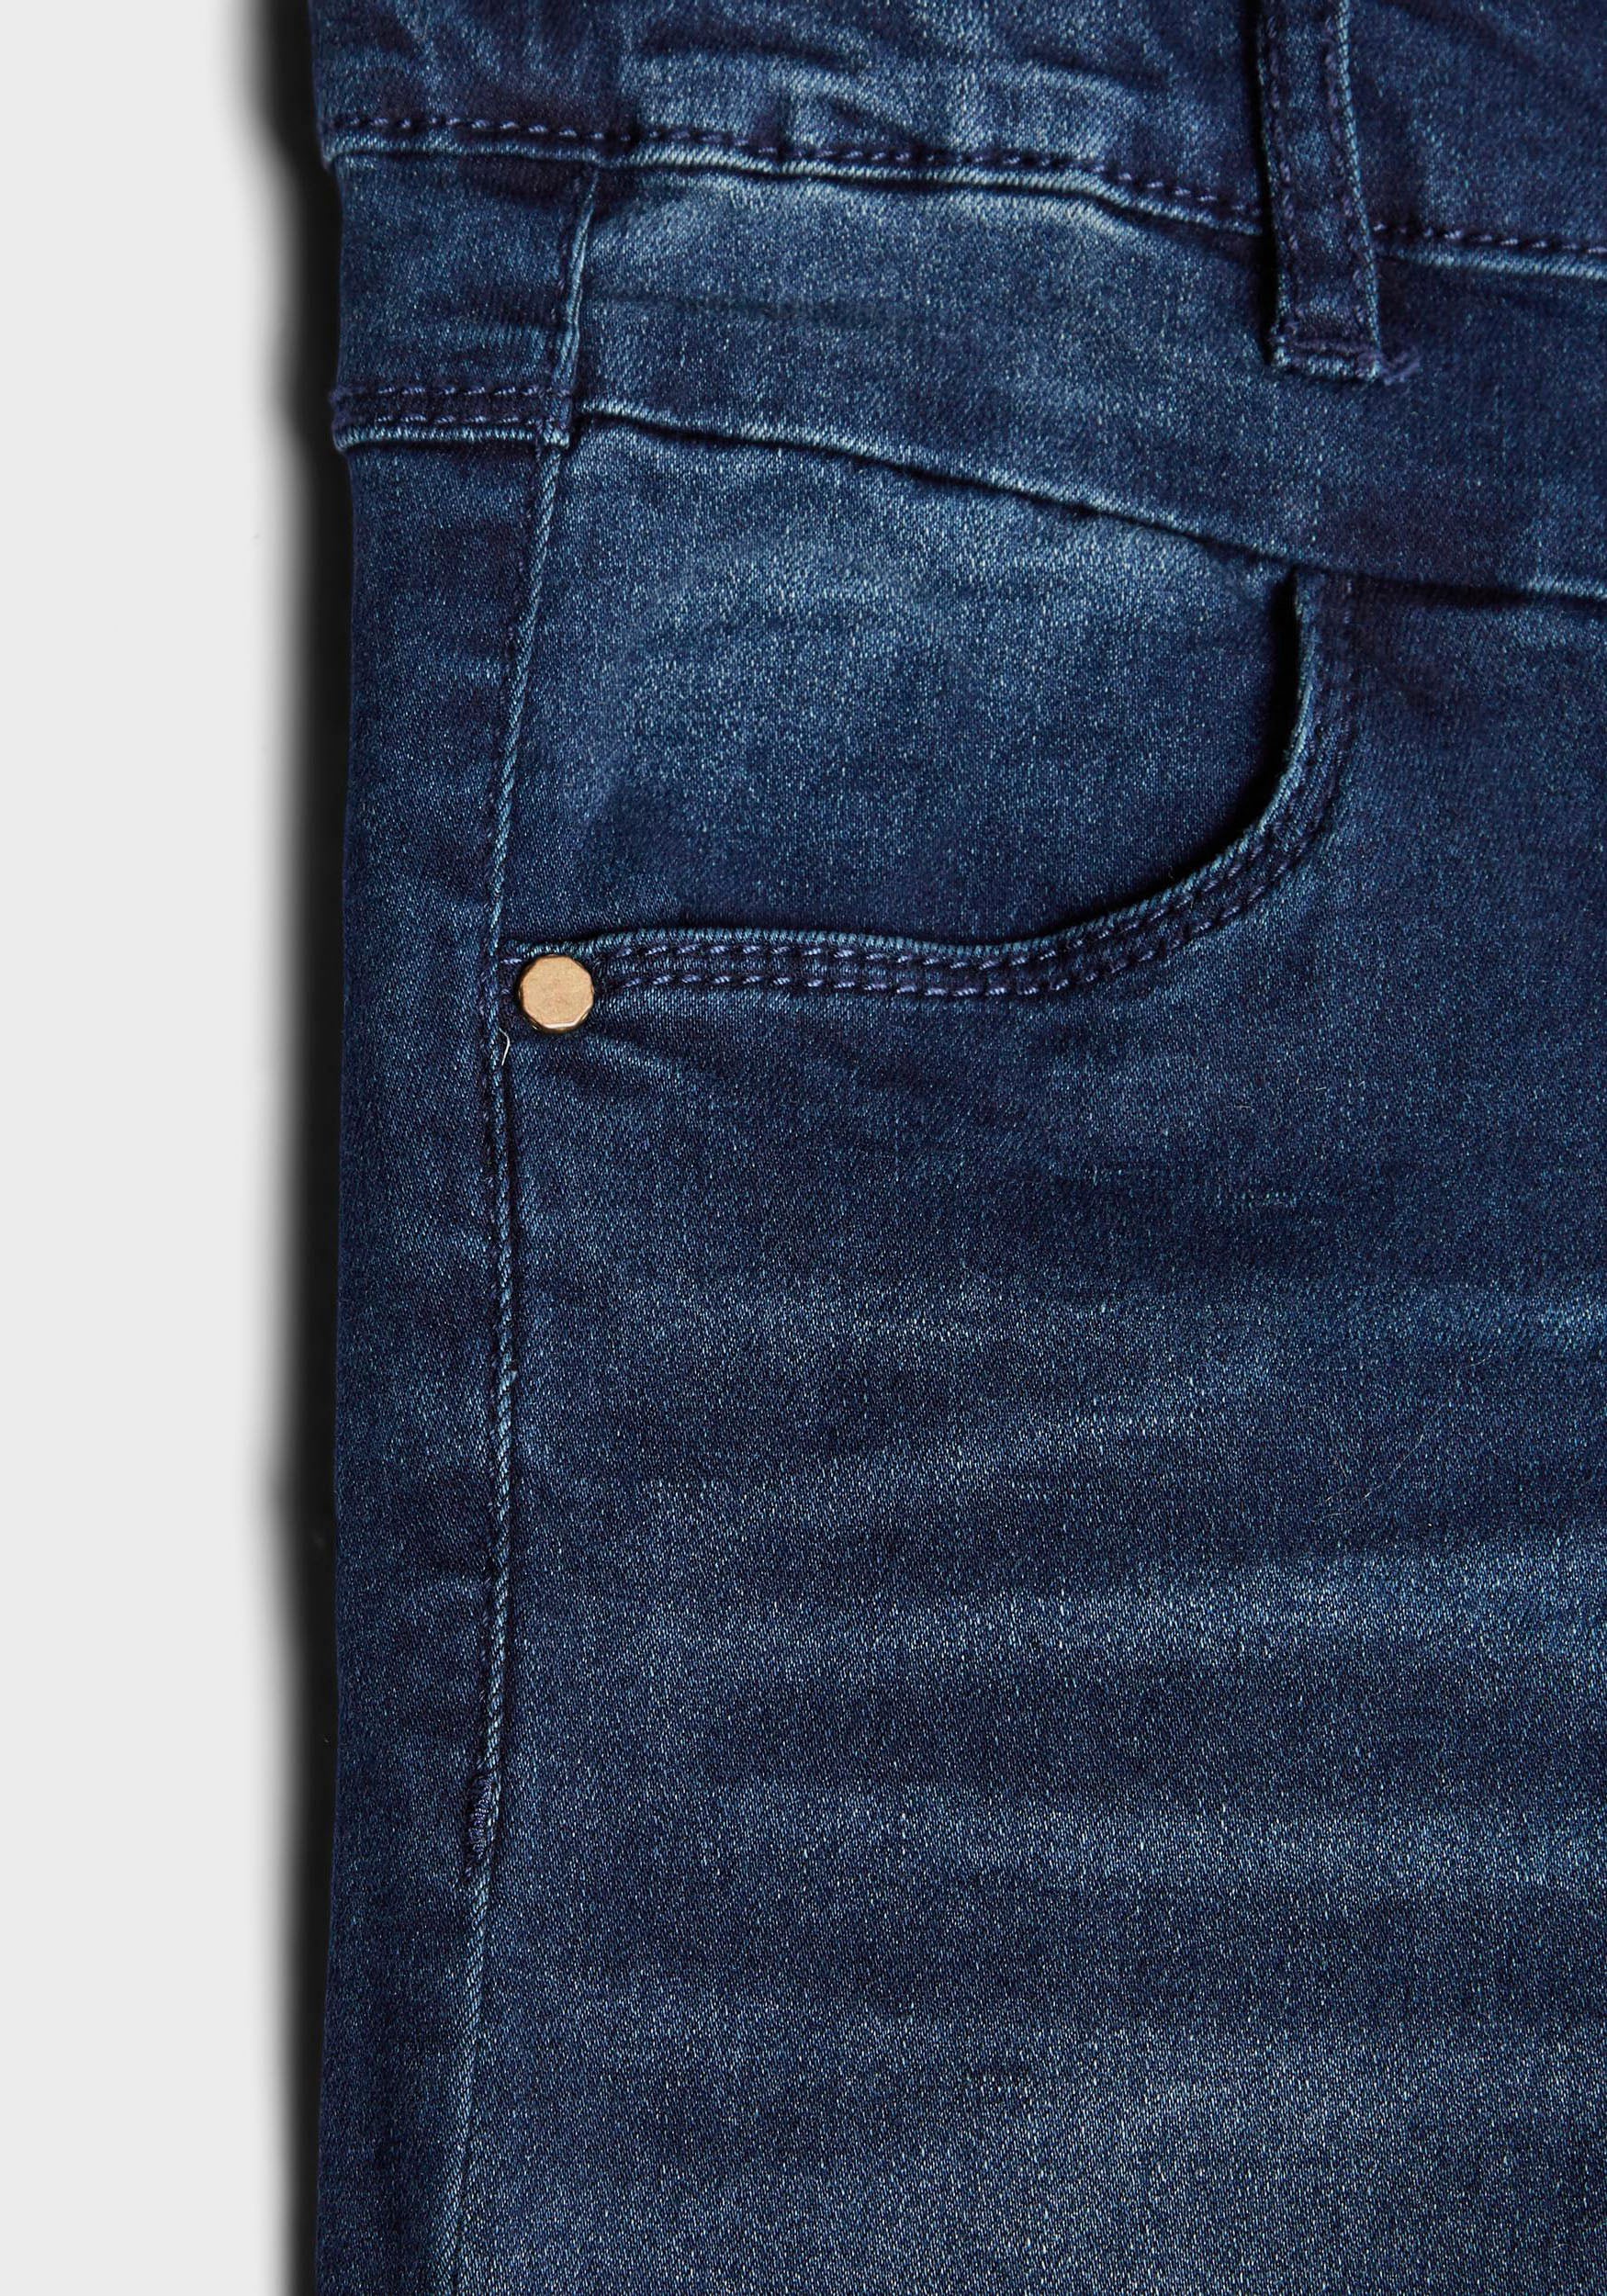 Name It Stretch-Jeans »NKFPOLLY«, in schmaler Passform online kaufen | BAUR